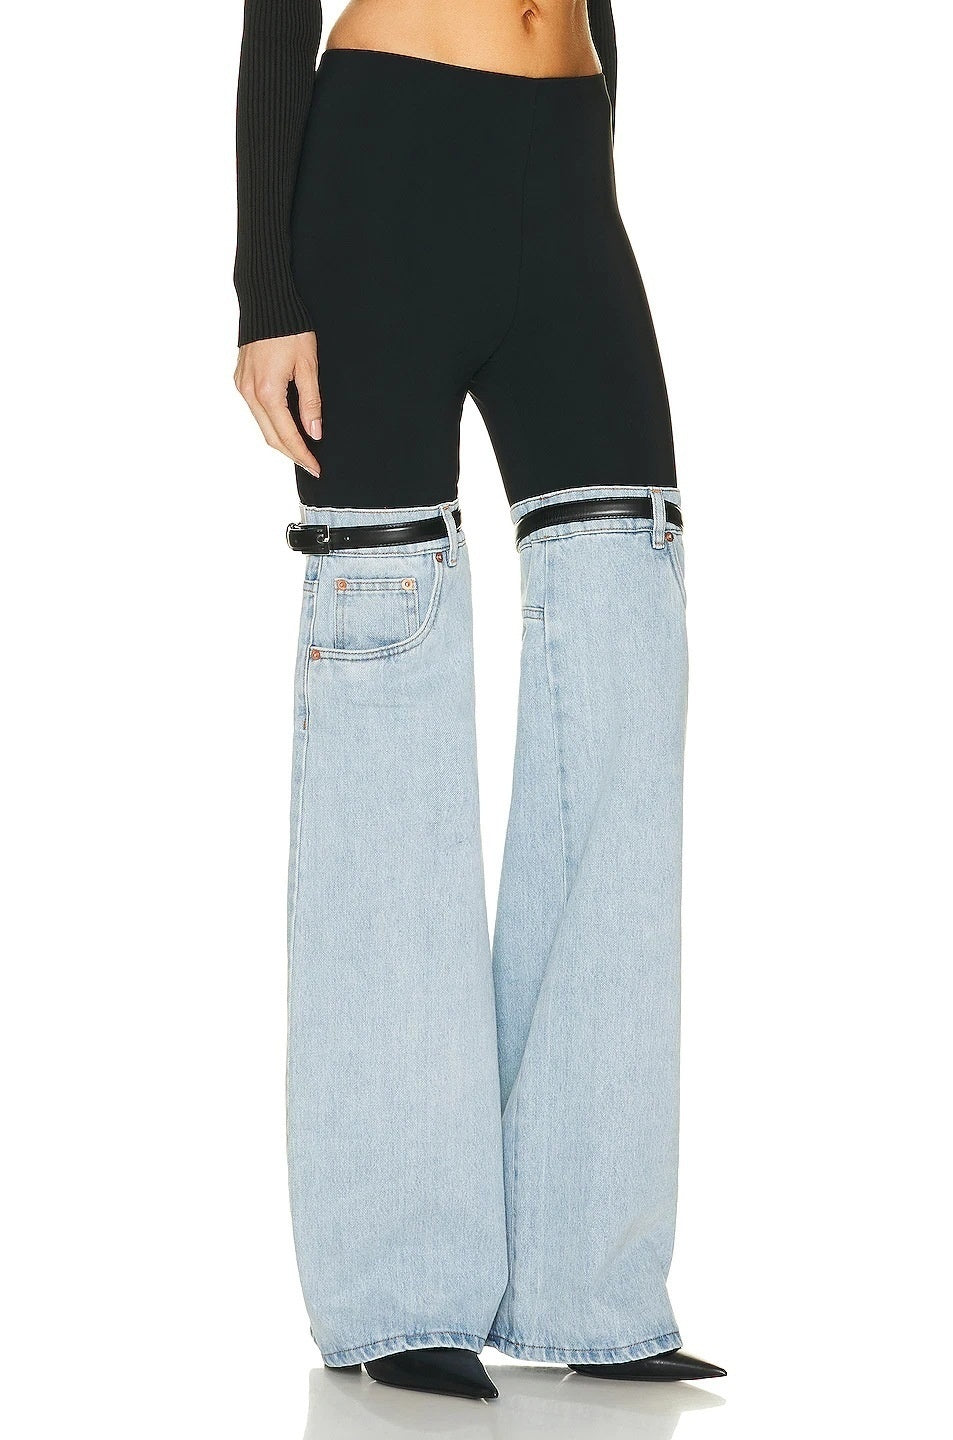 Pantalone Jeans Yuppys